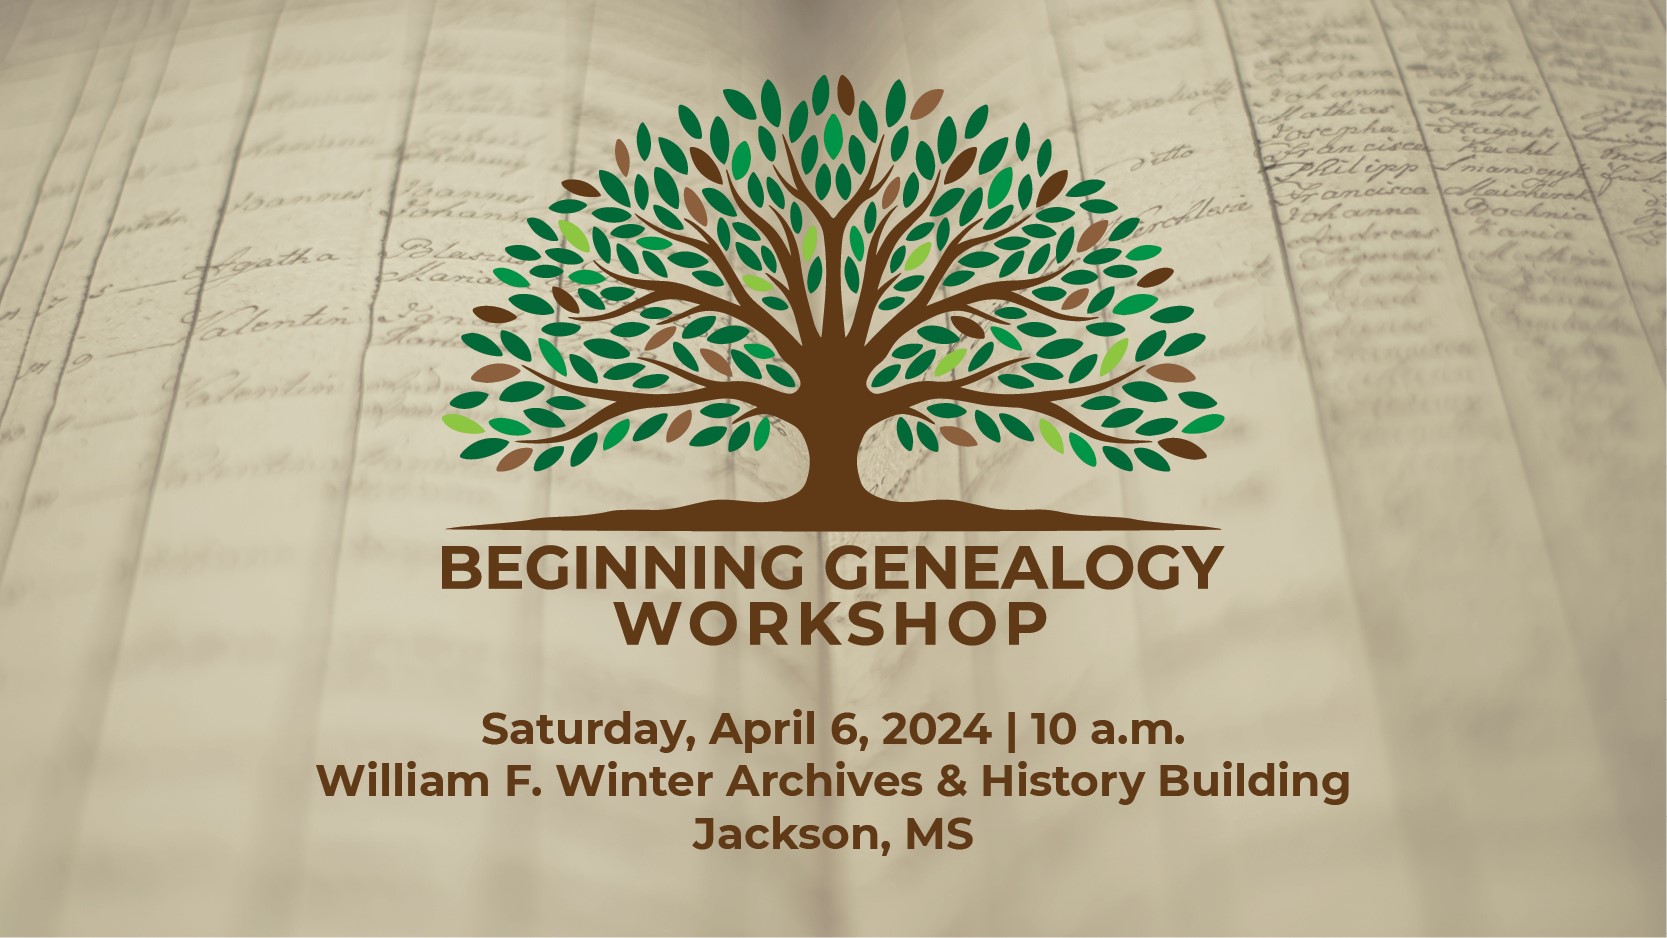 Beginners Genealogy Workshop